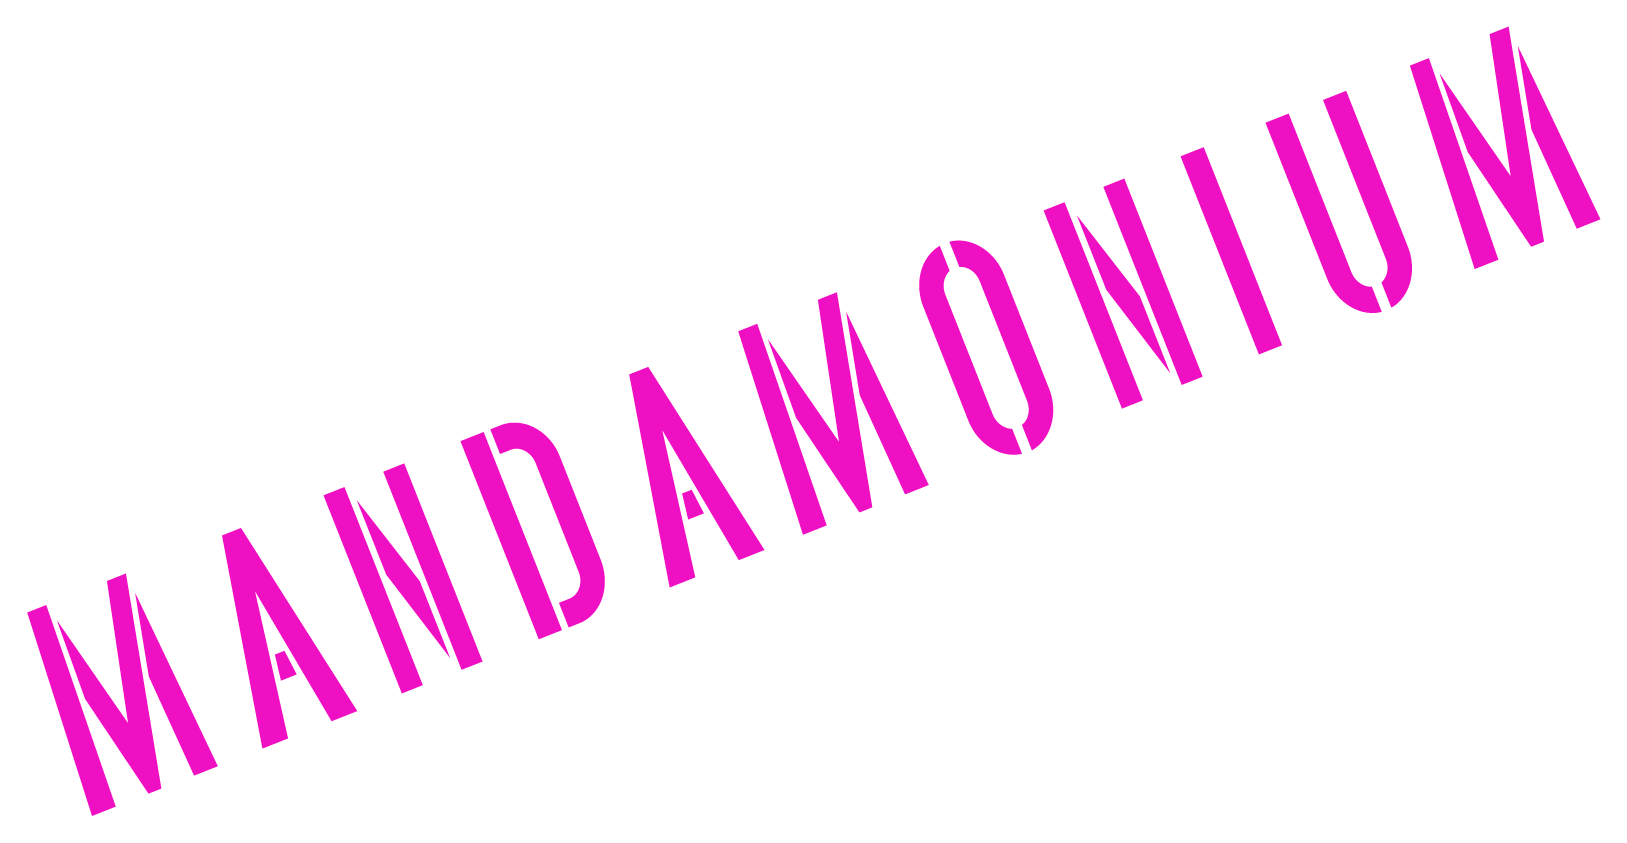 Mandamonium